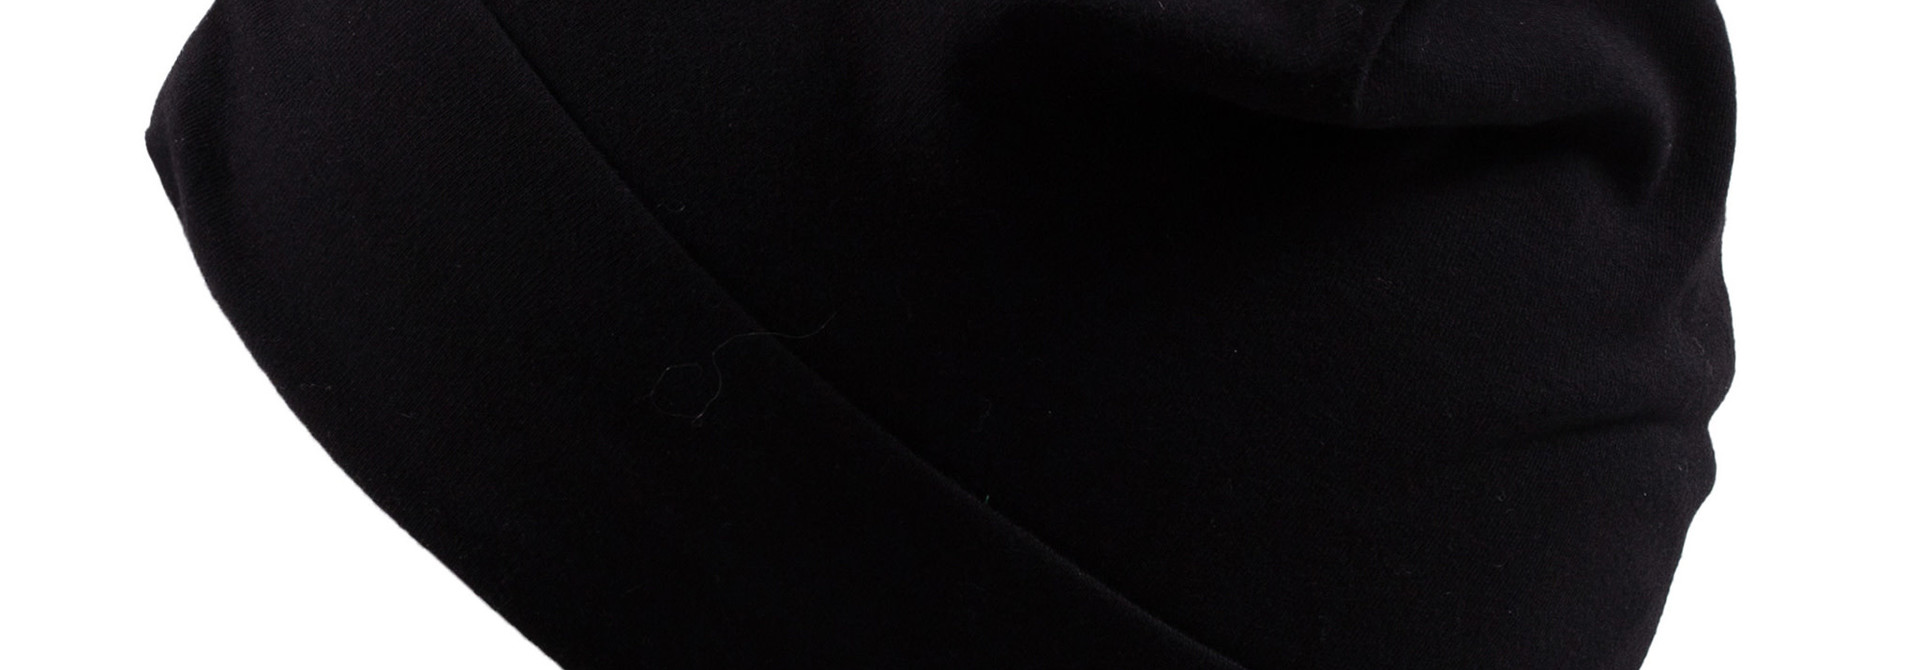 Tuque en jersey - Mini Noir